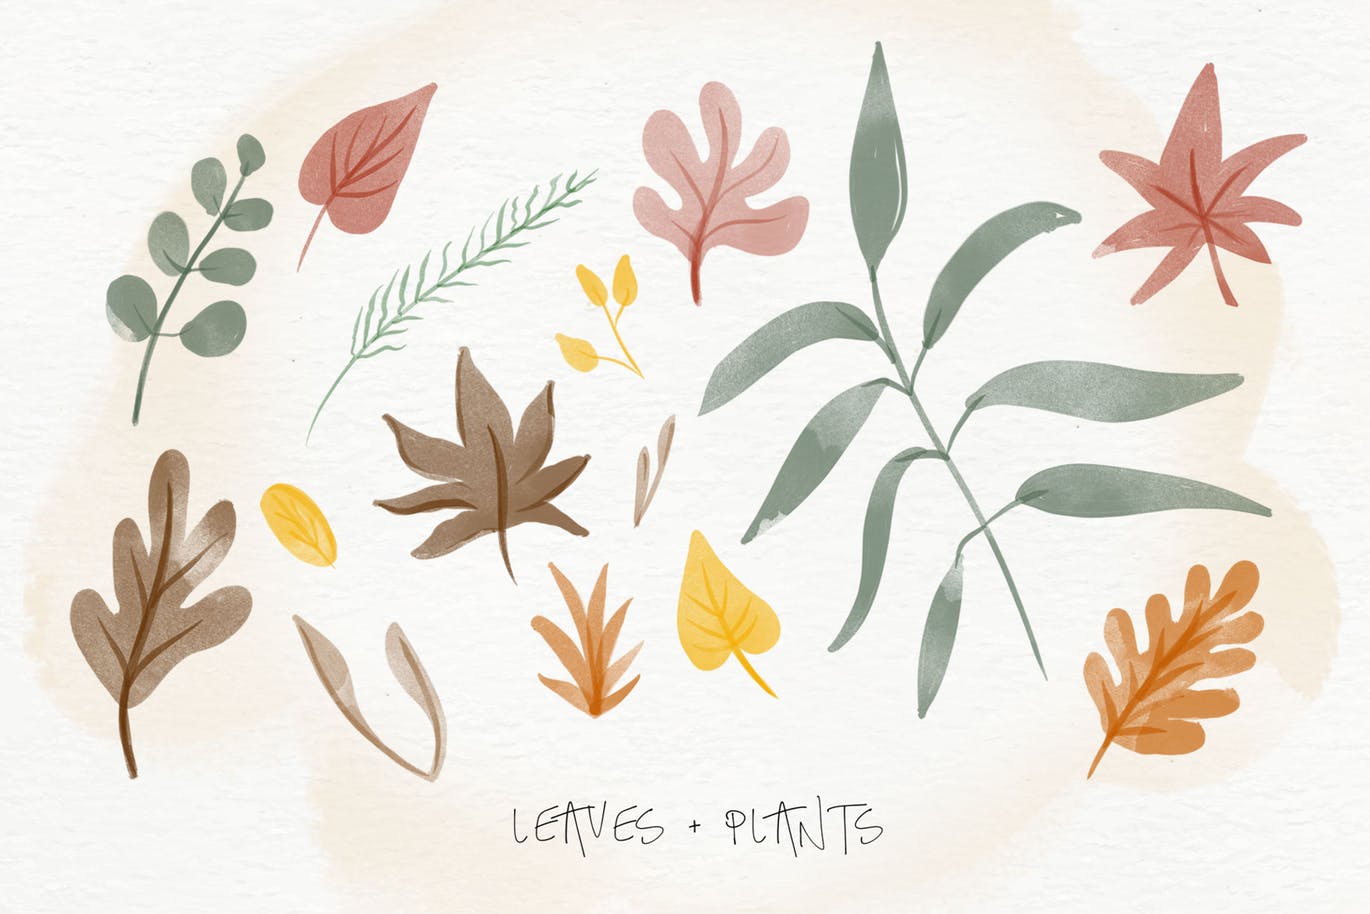 秋天主题水彩手绘图案设计素材包 Autumn Watercolor Kit插图5